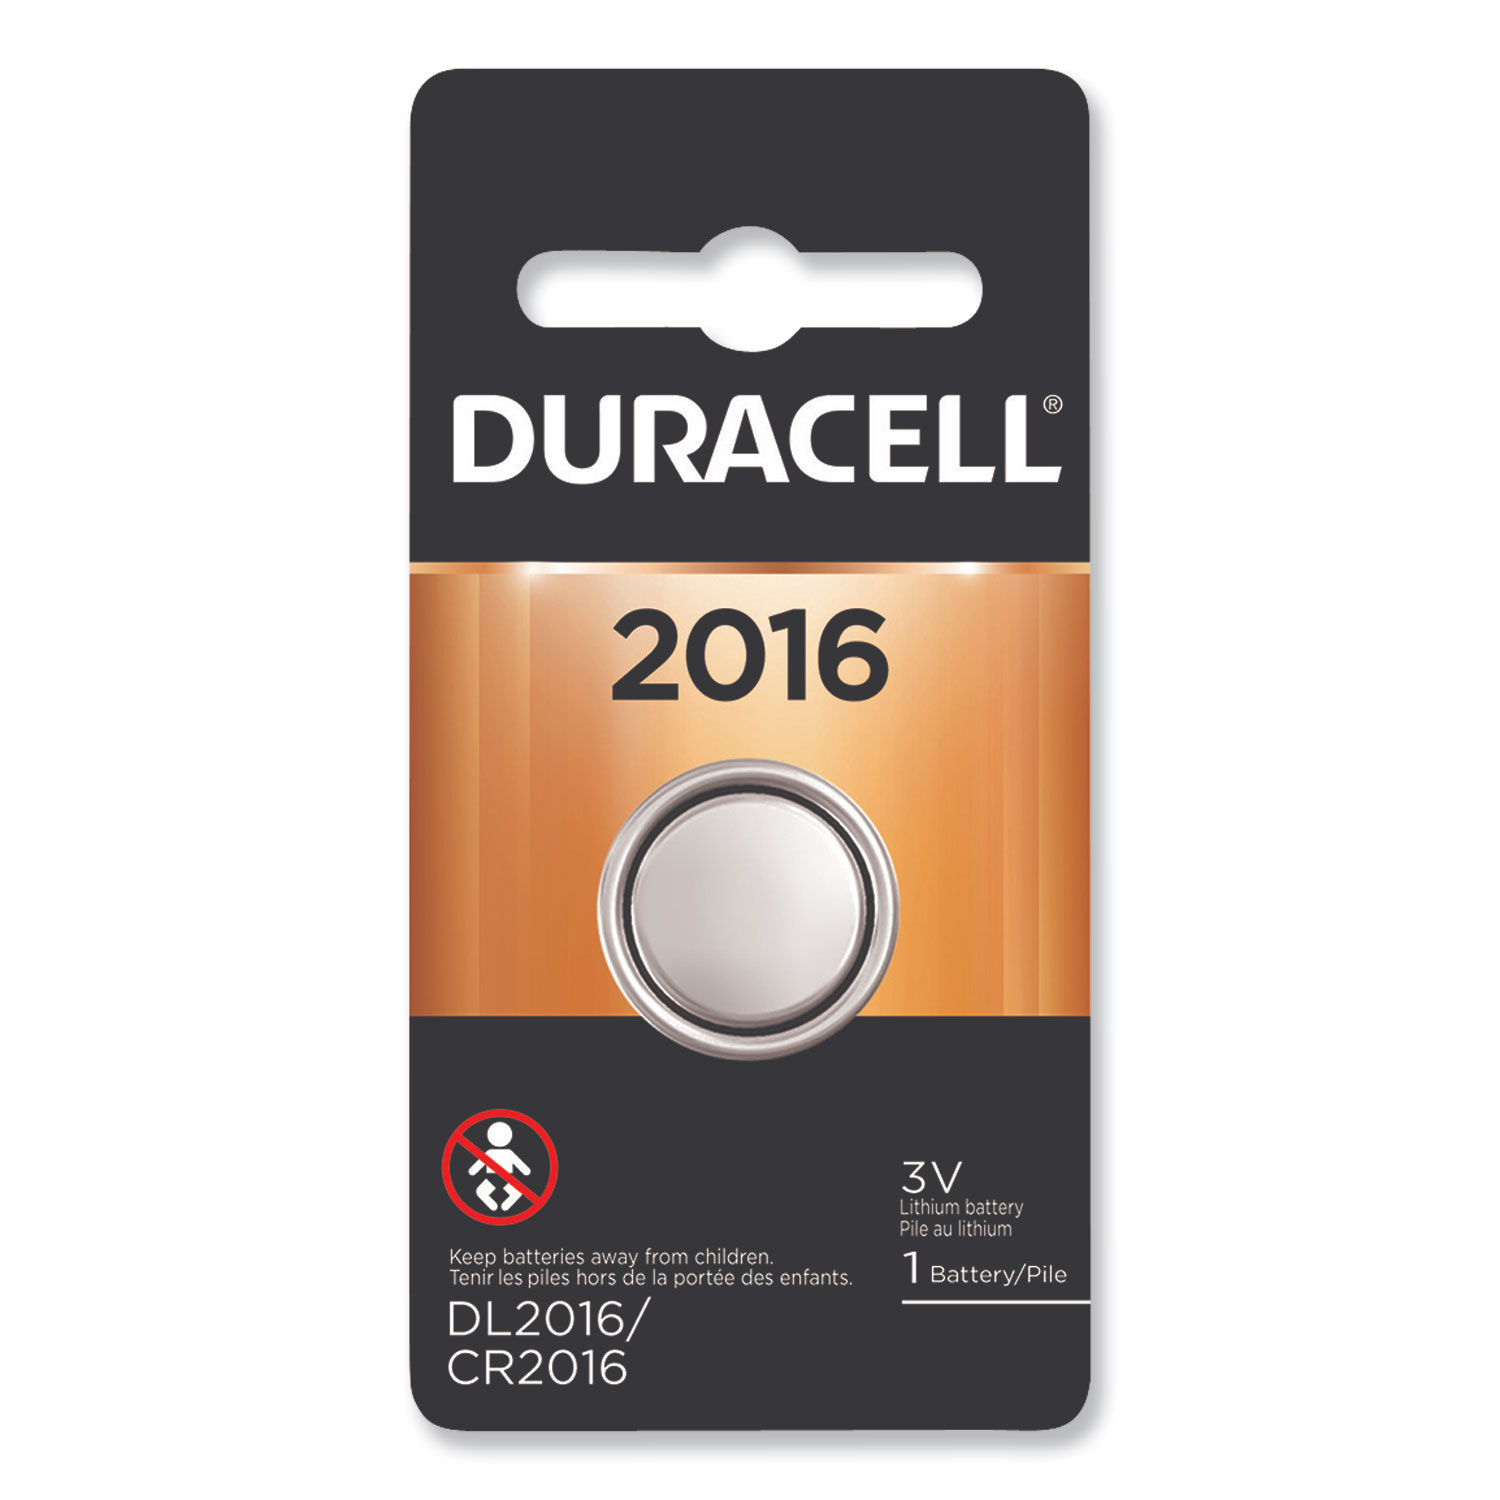  Duracell DL2016BPK Lithium Coin Battery, 2016, 1/Pack (DURDL2016BPK) 